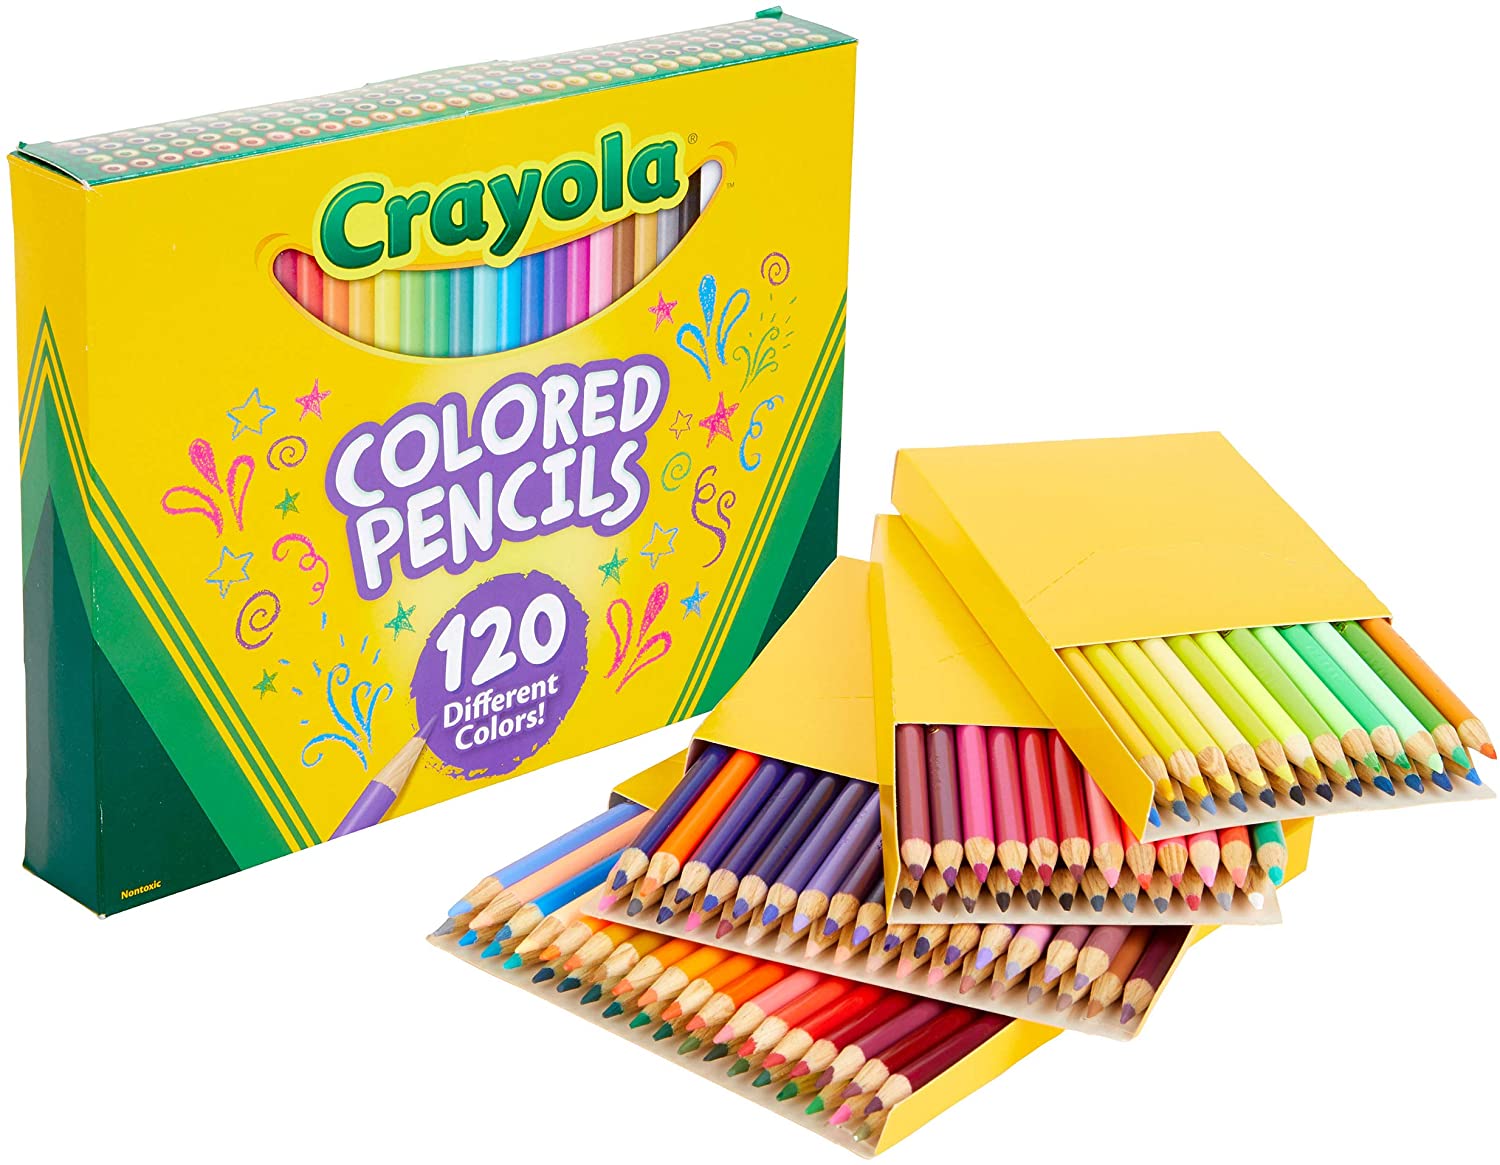 Crayola Fine Tip Colored Pencils, 120-Count